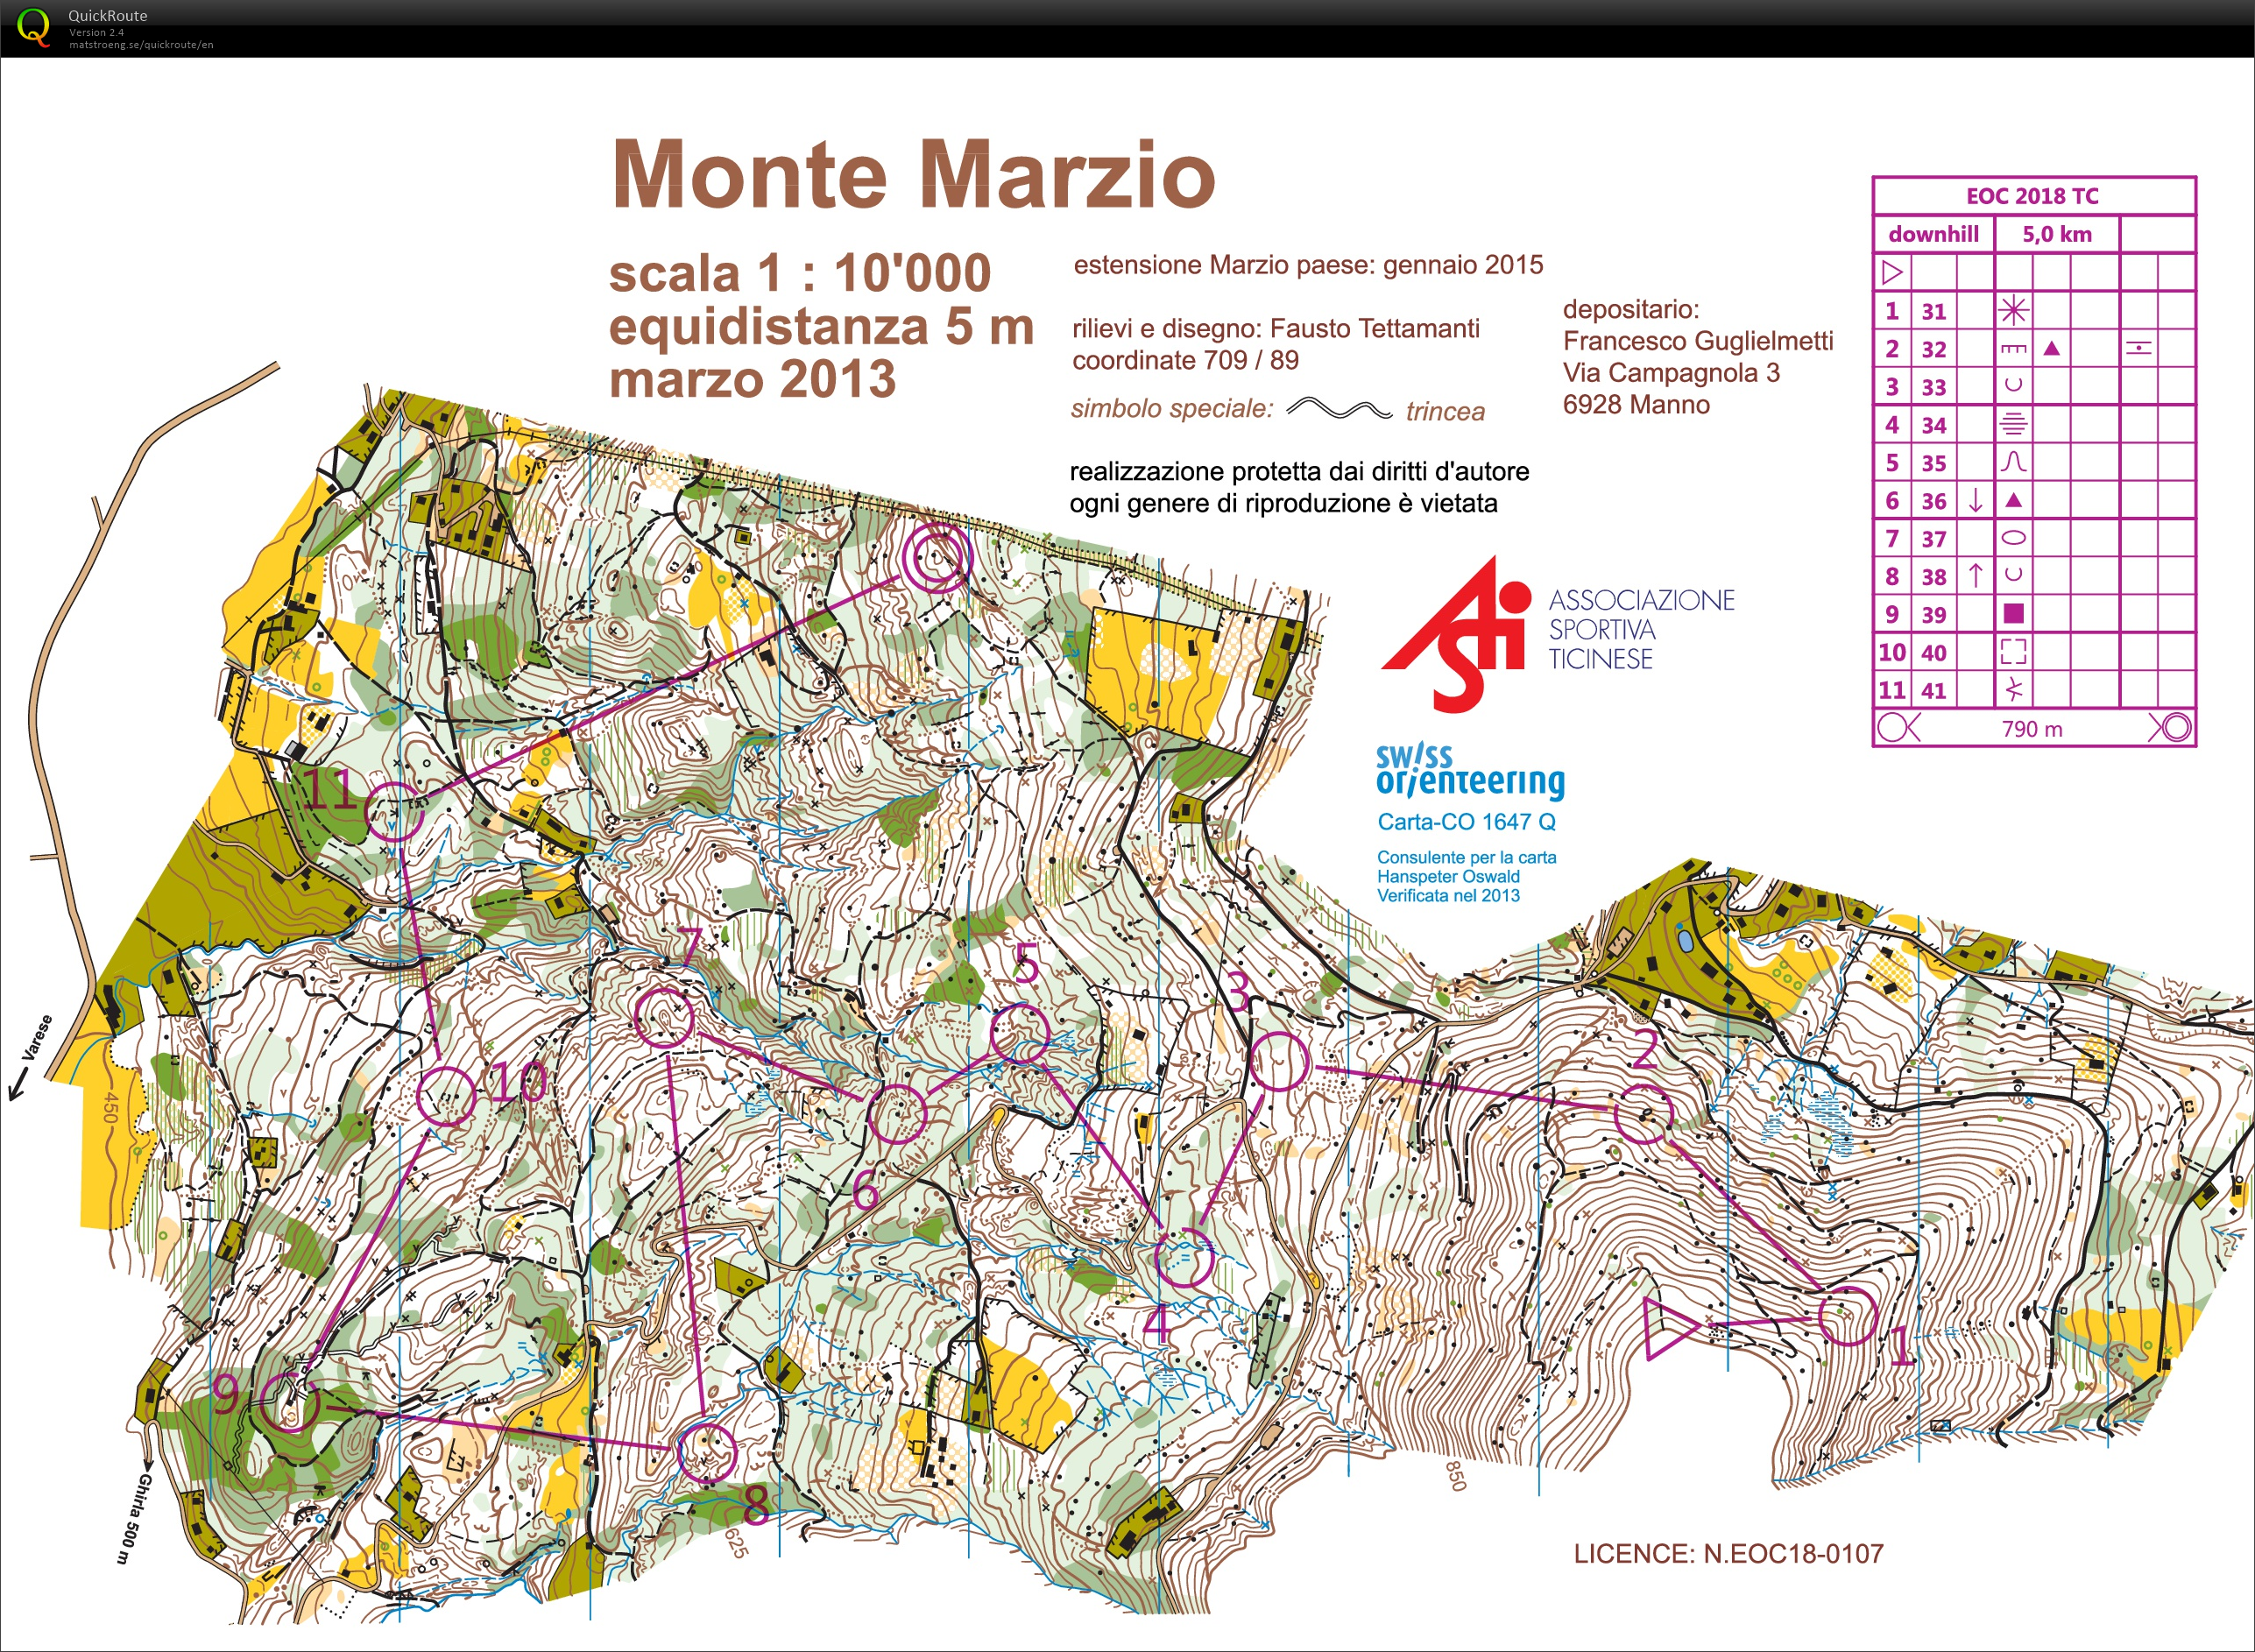 Monte Marzio Downhill EOC TL #2 (2018-03-24)